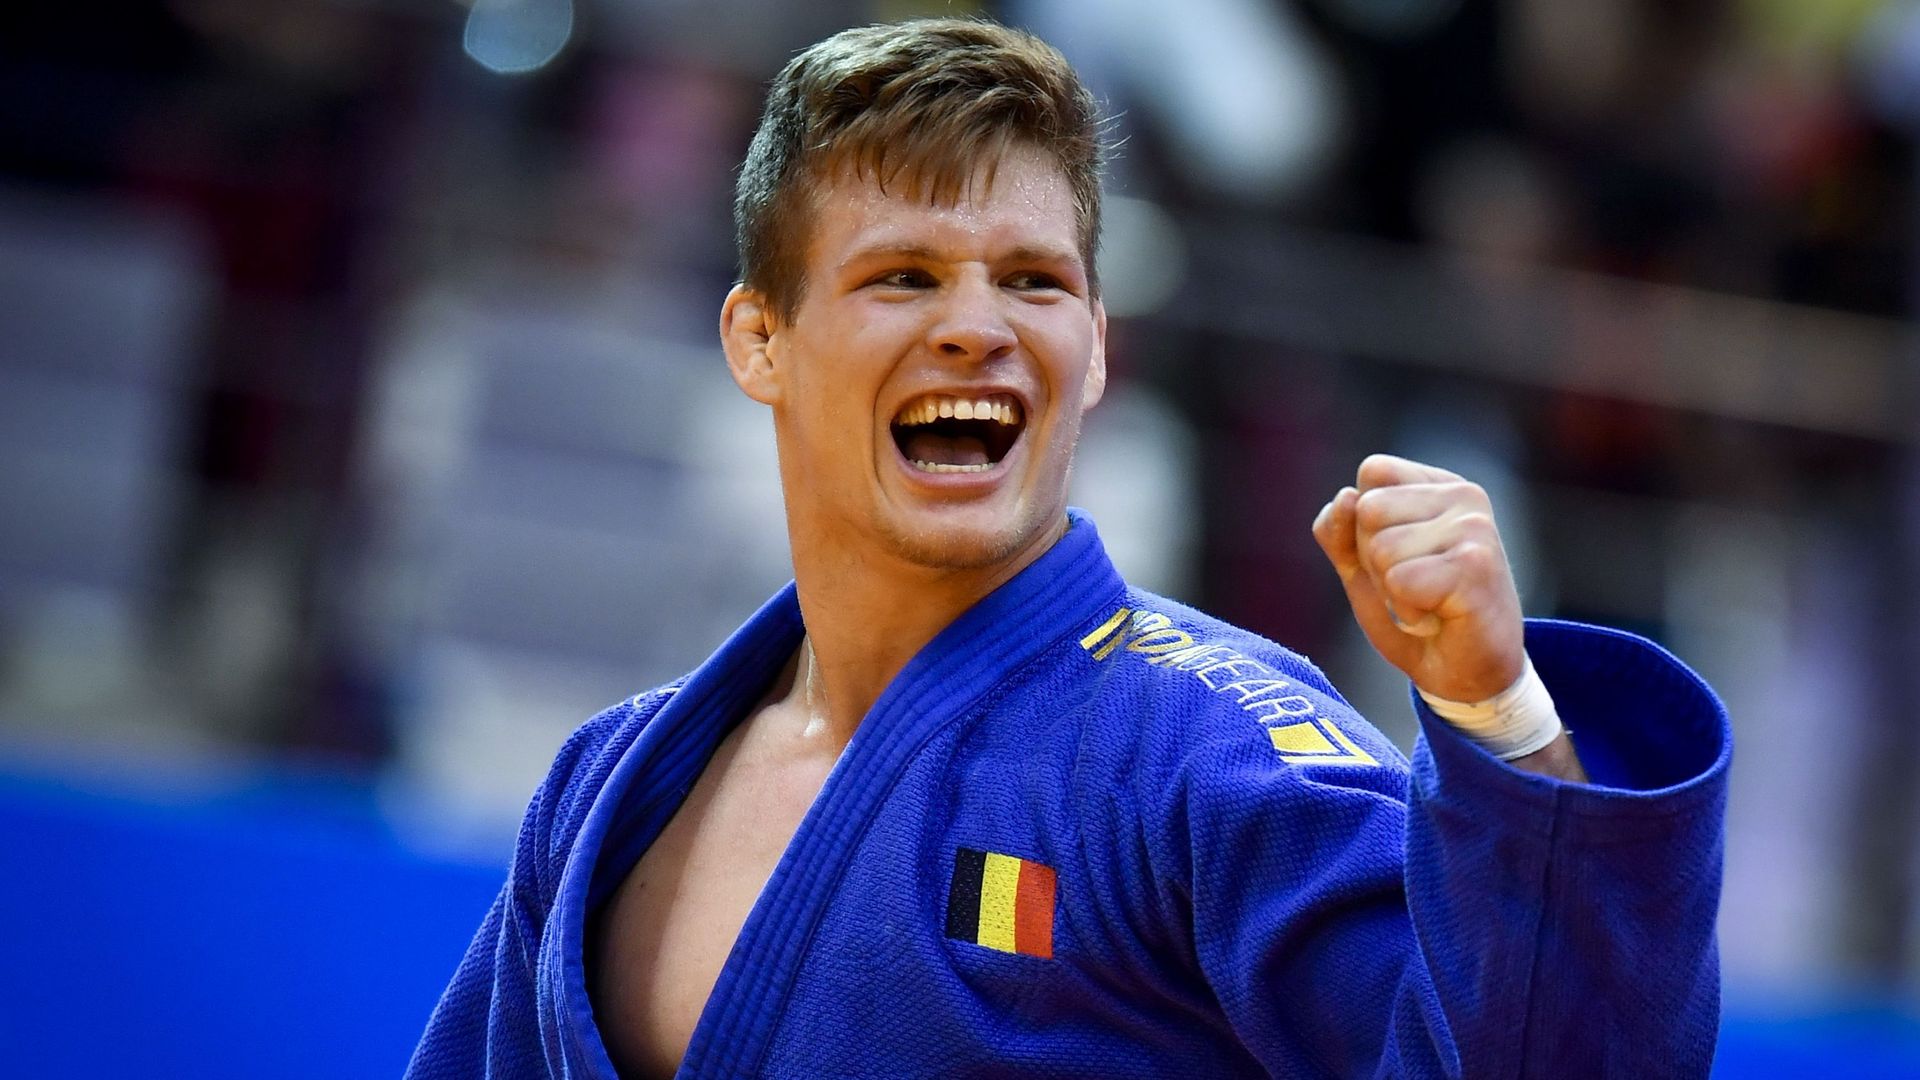 Après le titre en 2019 et le bronze en 2020, Matthias Casse vise un 3ème podium consécutif aux championnats d'Europe de Lisbonne